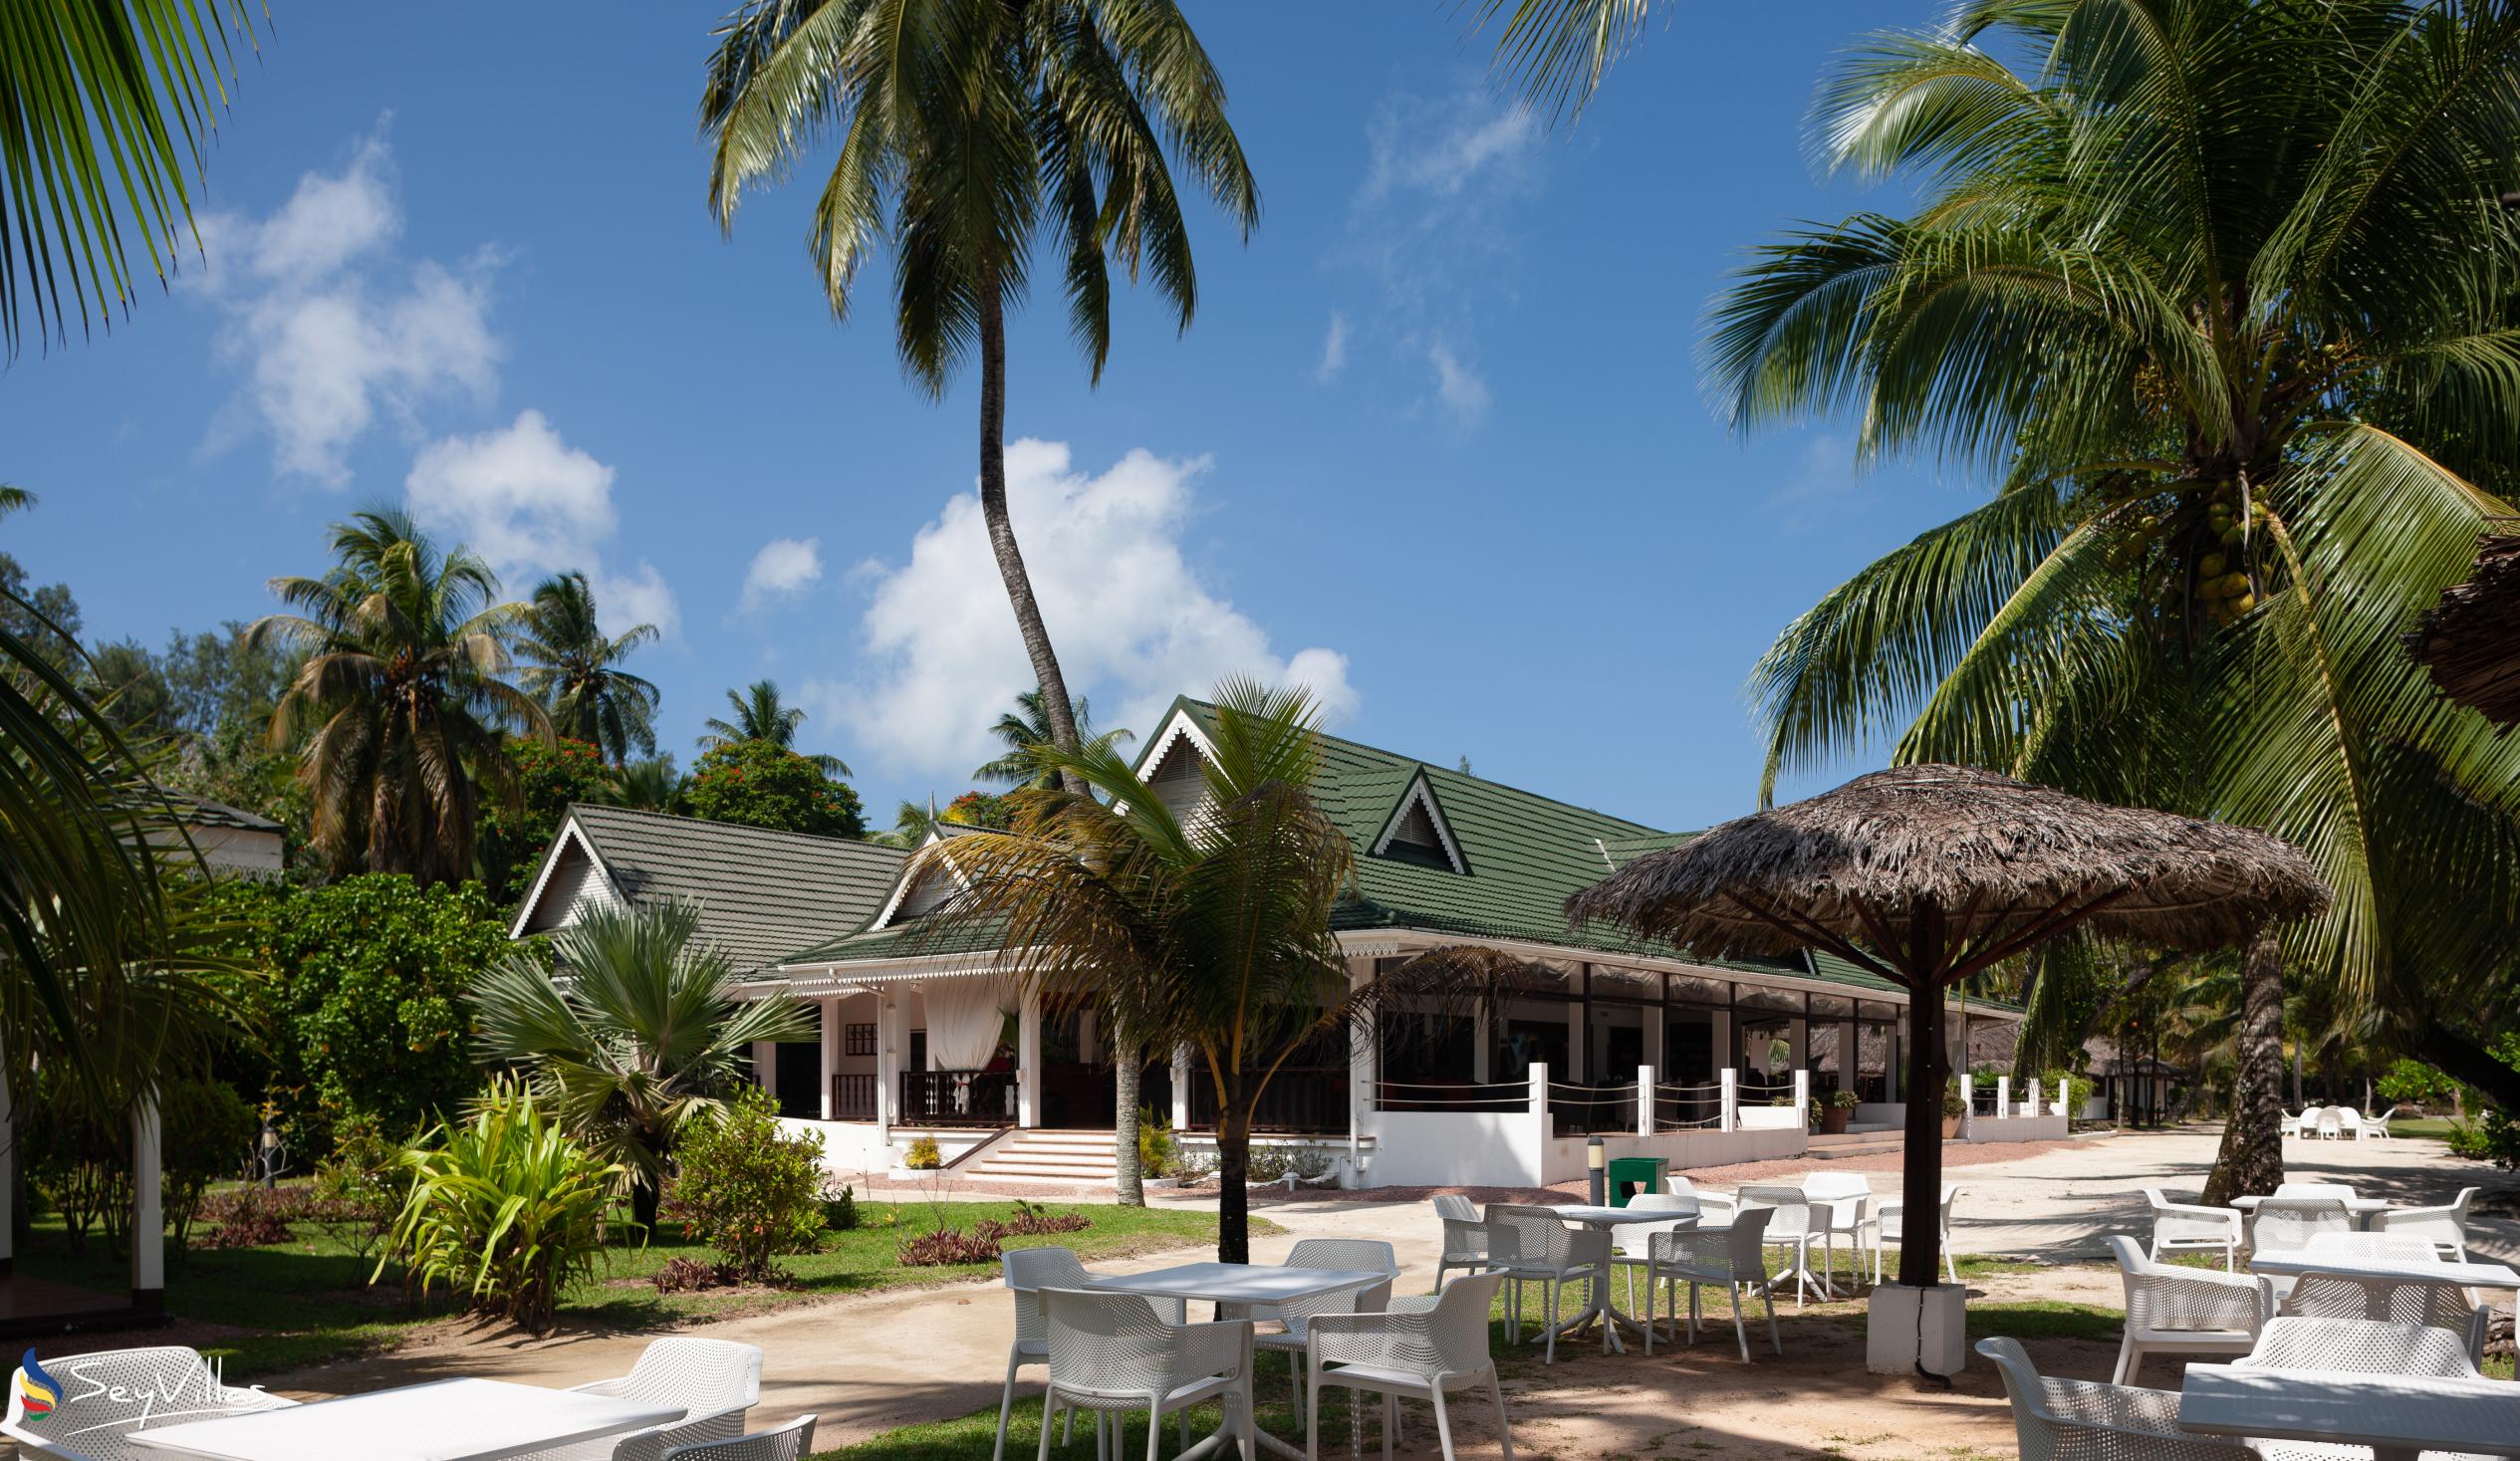 Foto 3: Hotel Cote D'Or Lodge - Aussenbereich - Praslin (Seychellen)